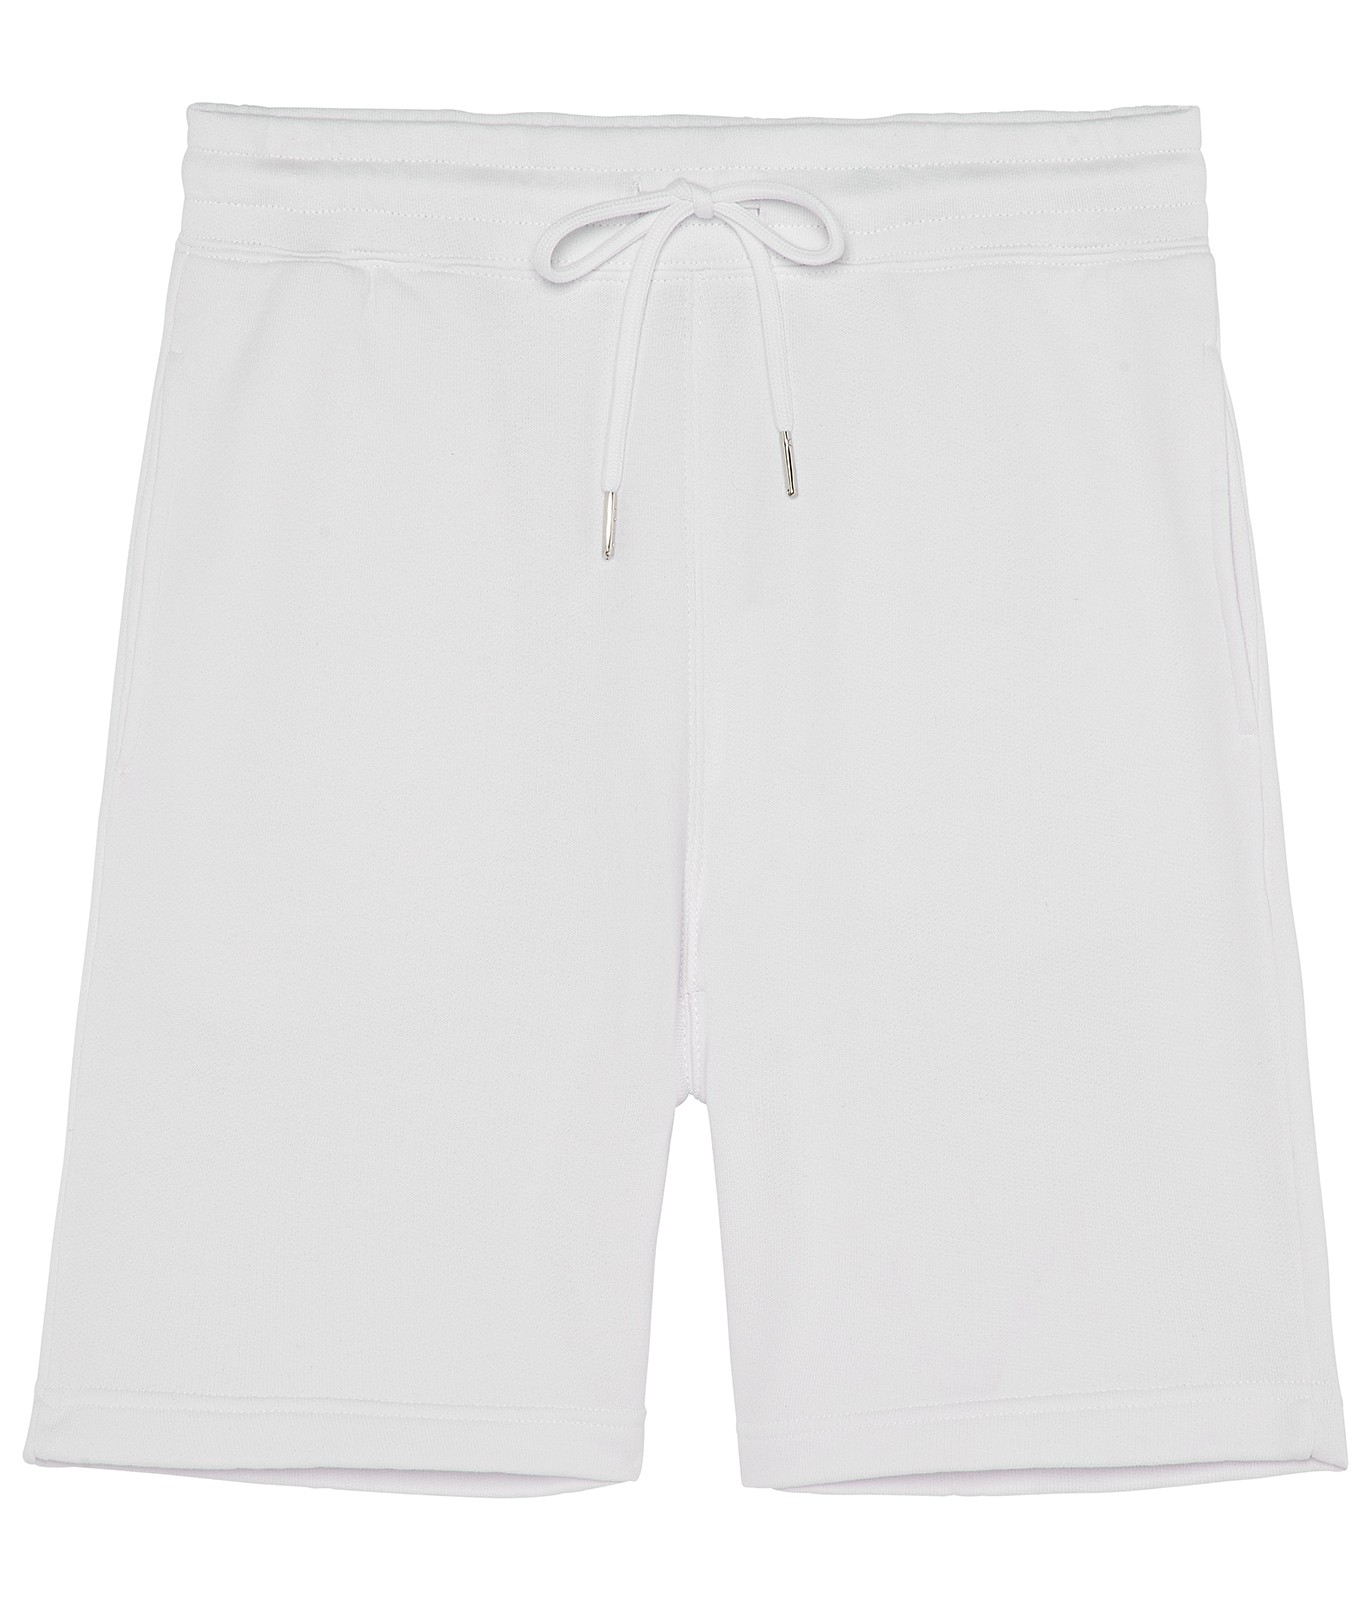 Men's cotton jogging shorts for men